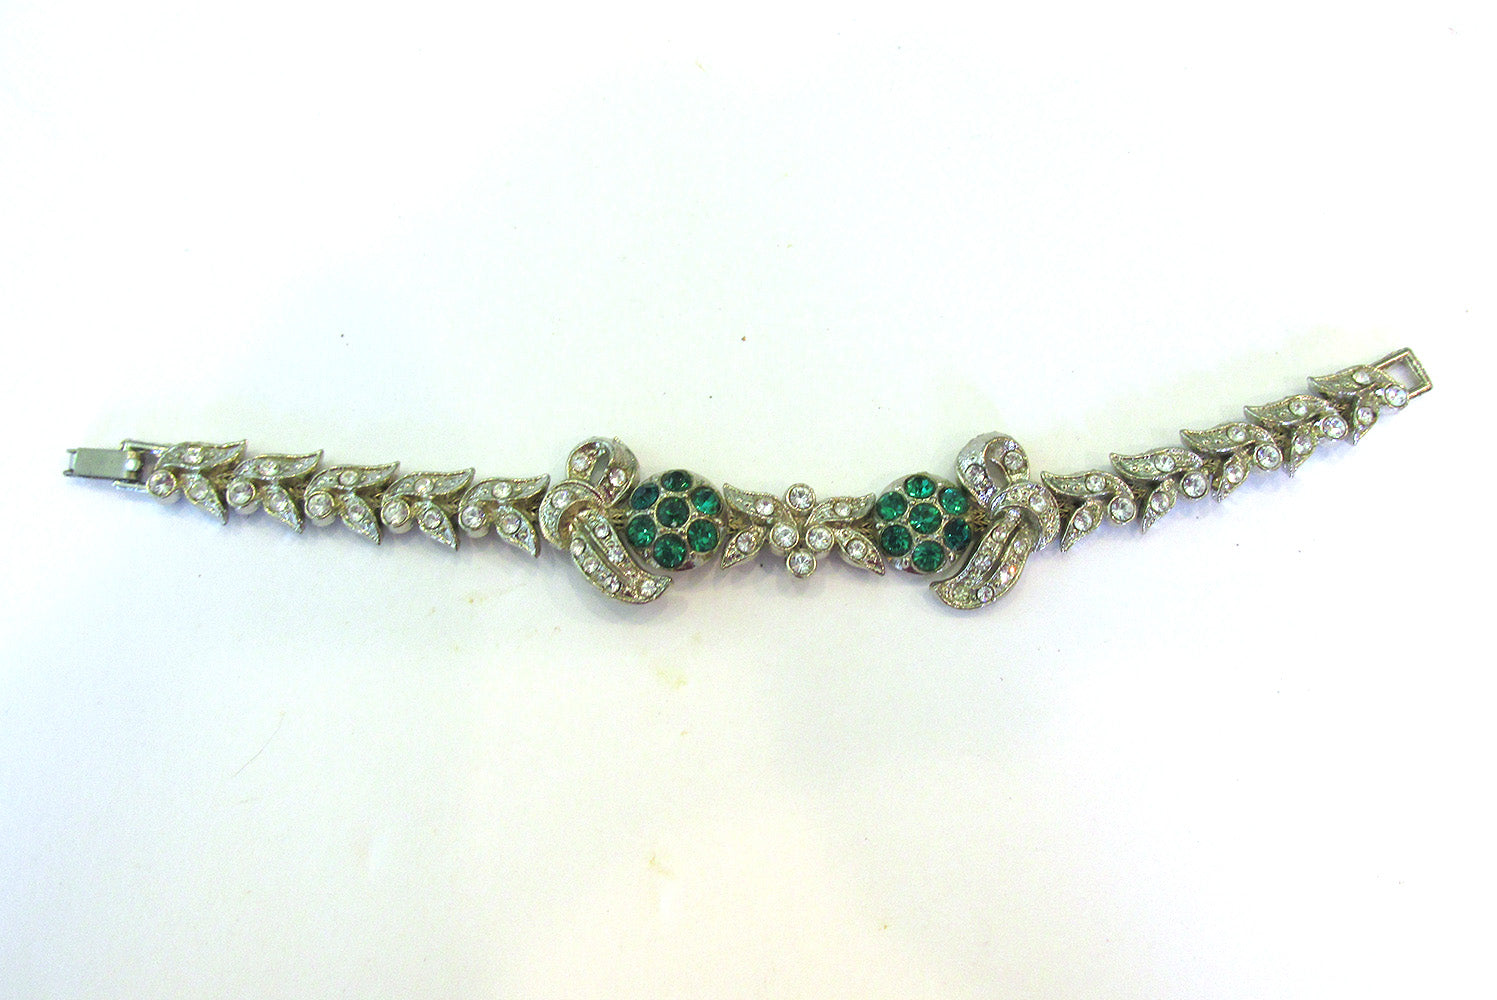 Vintage Jewelry 1930s Art Nouveau Style Diamante Floral Bracelet - Front